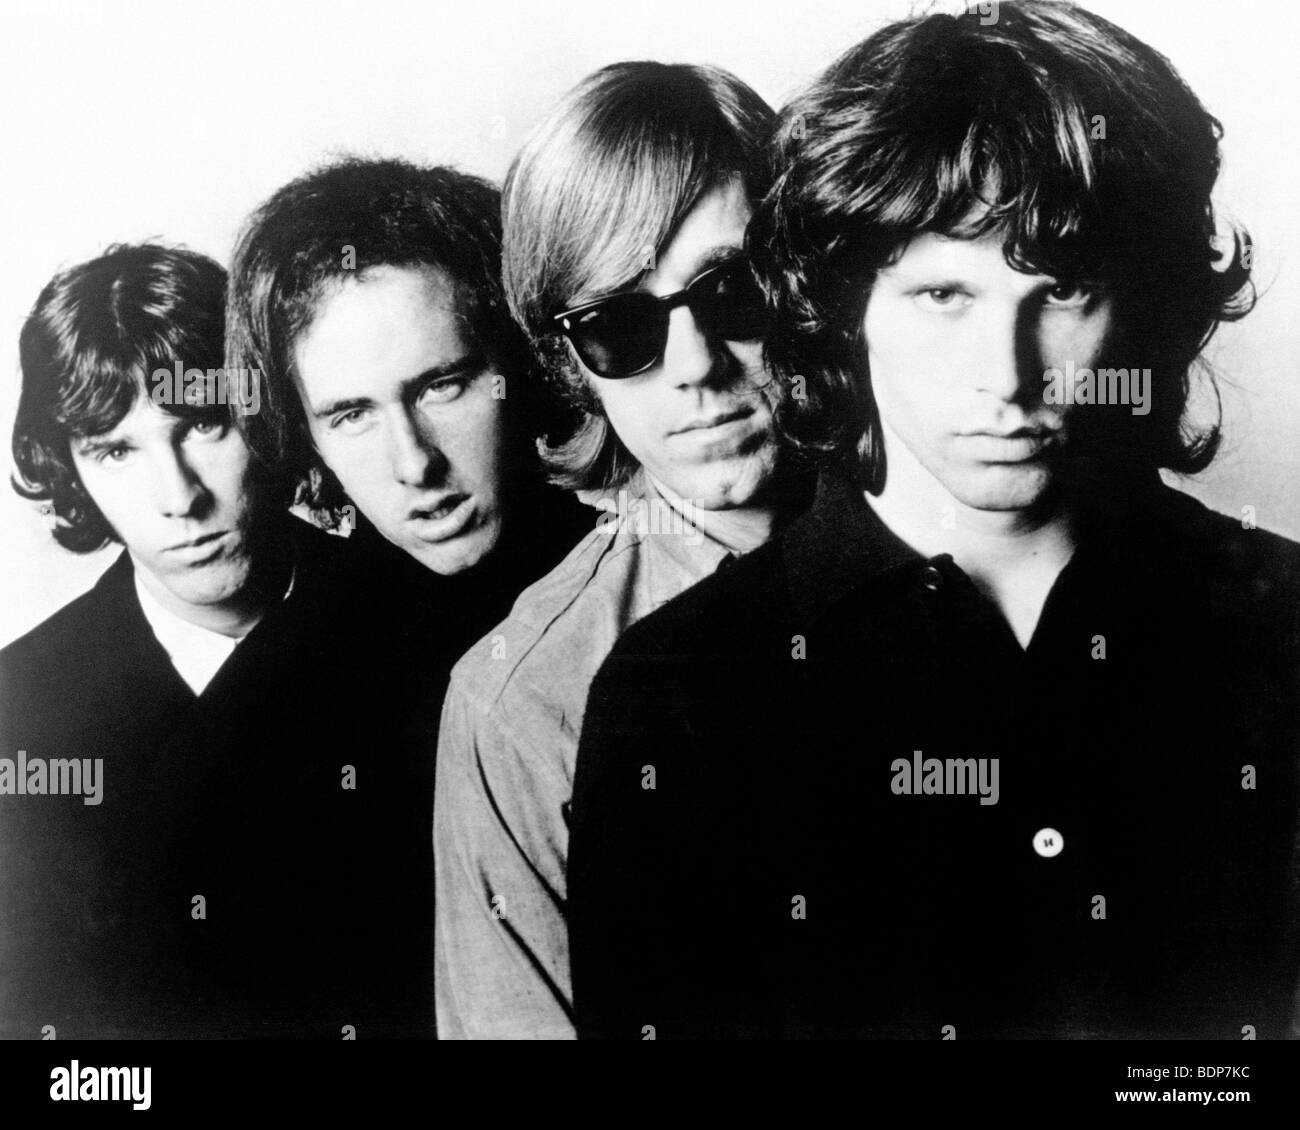 Les portes - Articles promotionnels photo de groupe rock américain de gauche à droite : John Densmore, Robby Krieger, Ray Manzarek, Jim Morrison Banque D'Images